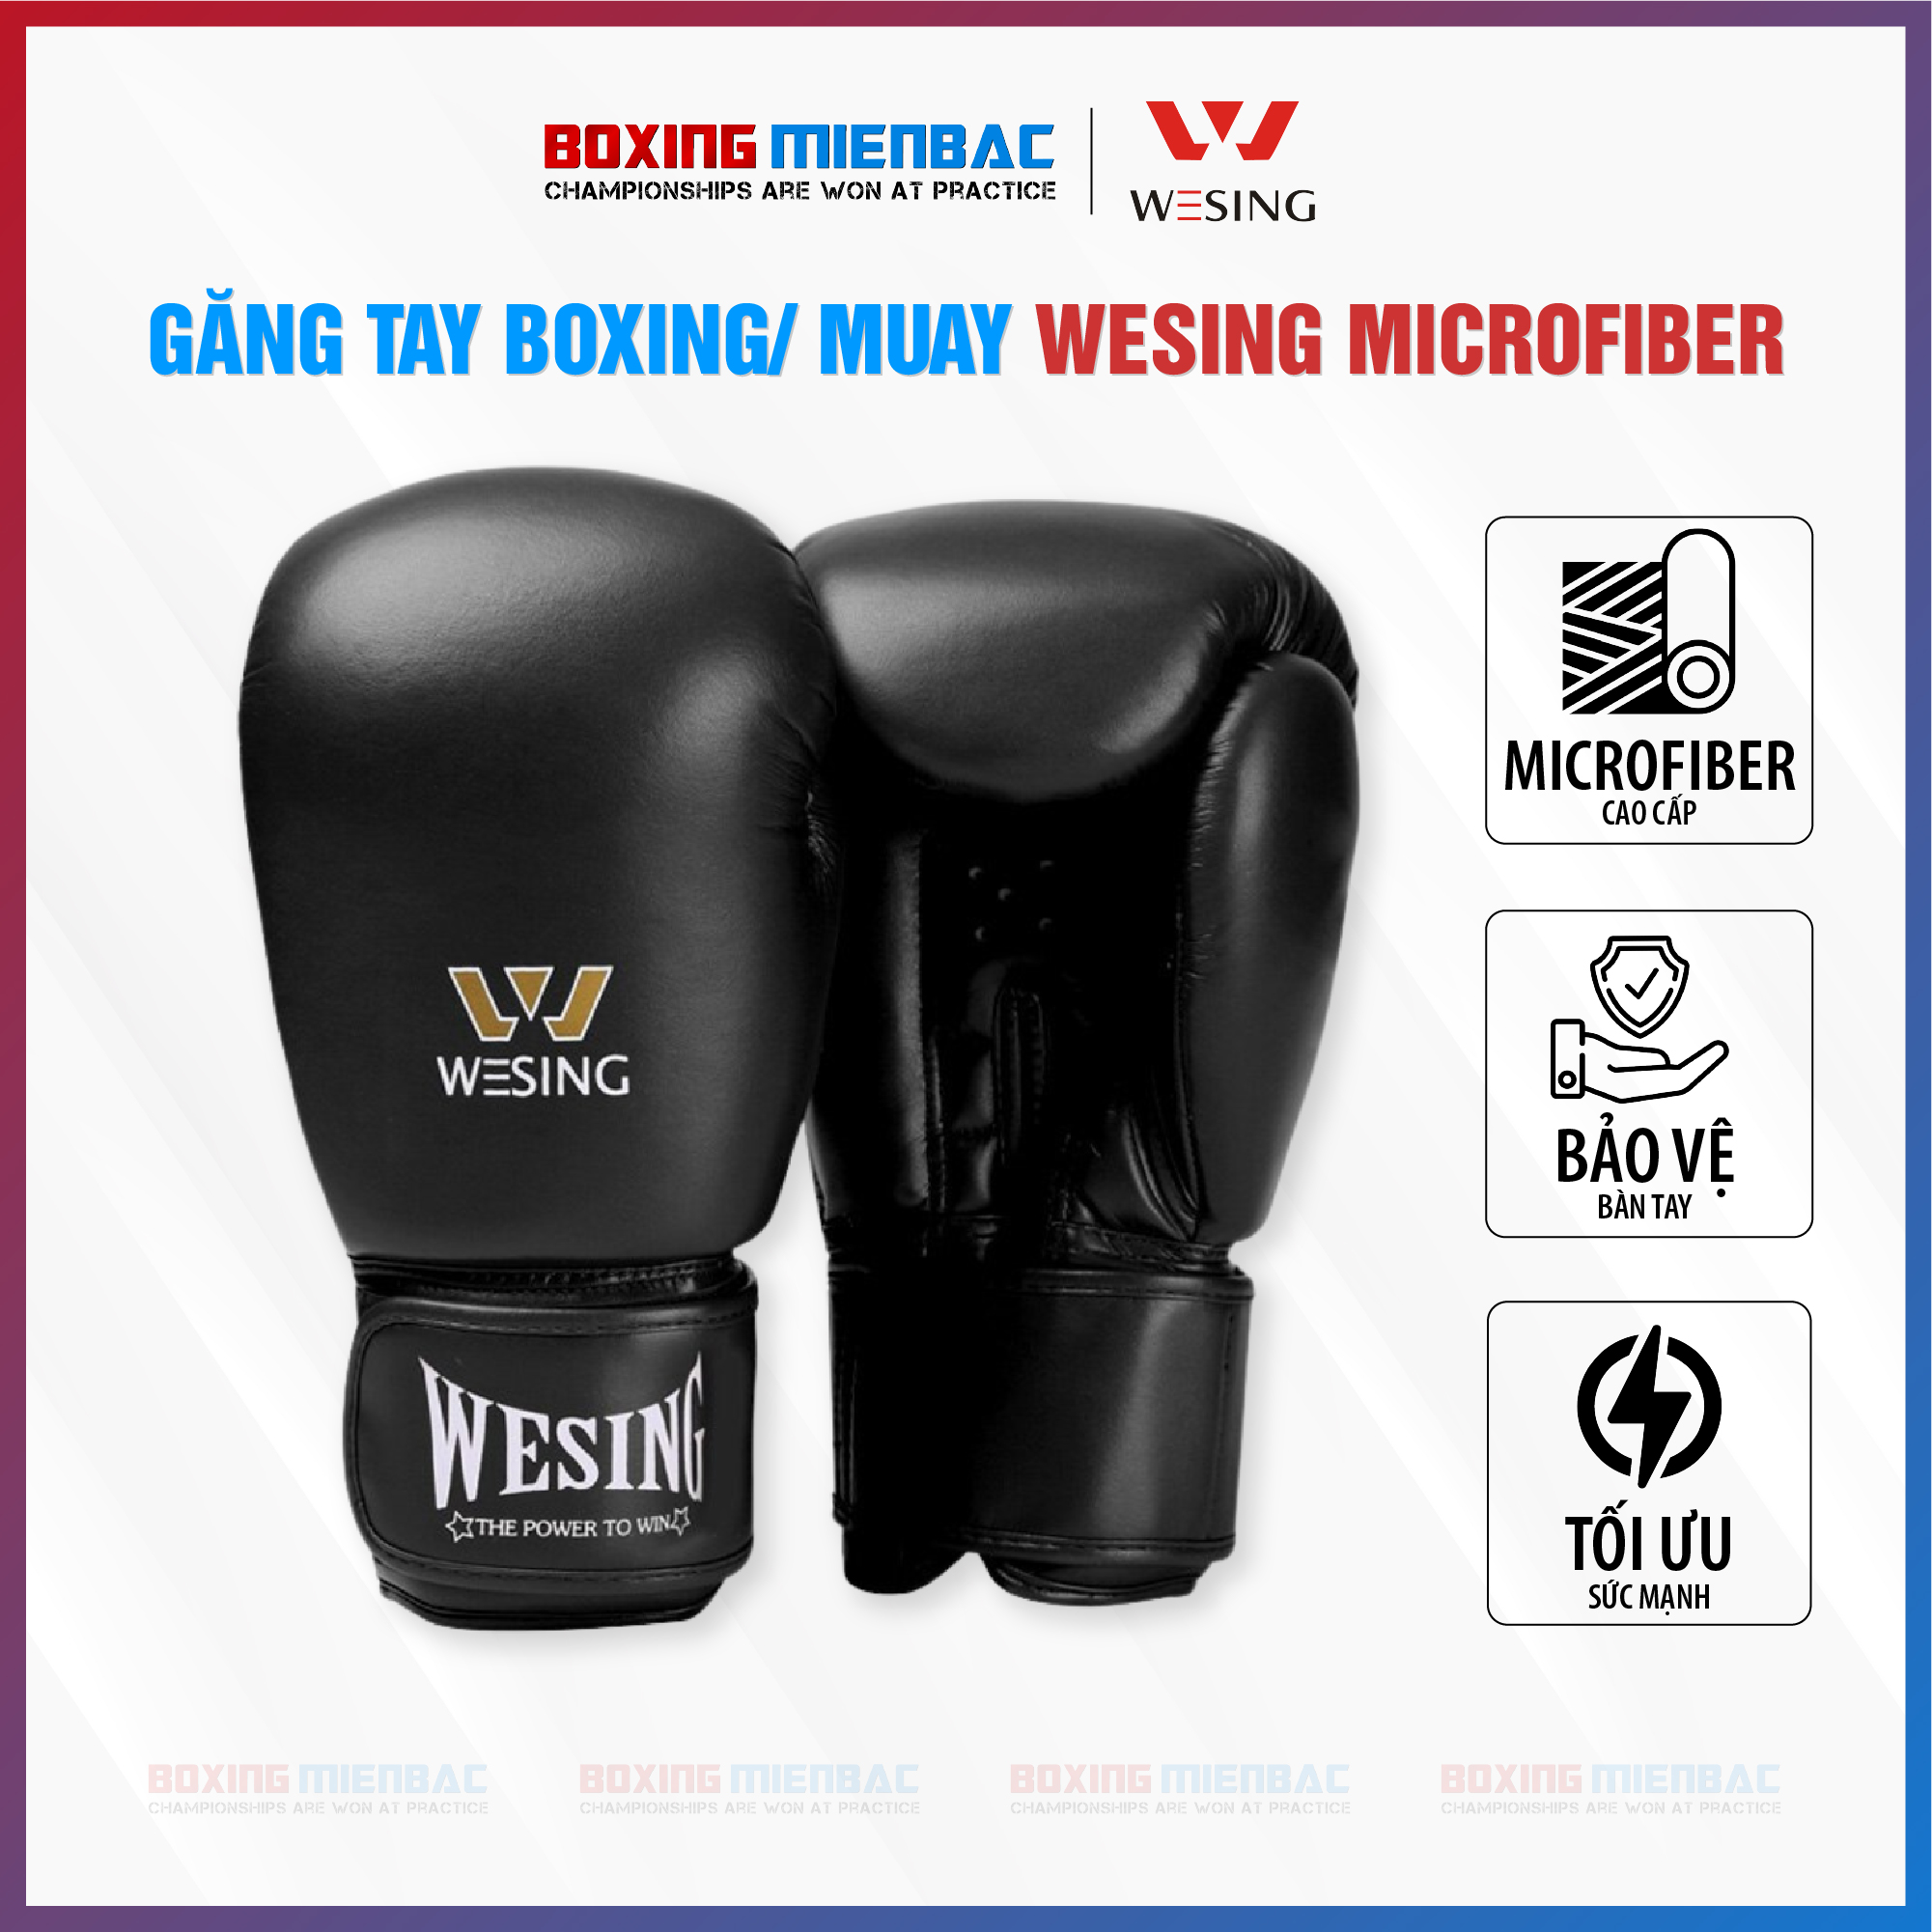 Găng tay Boxing/ Muay Wesing Microfiber - Đen, Đỏ, Xanh Dương